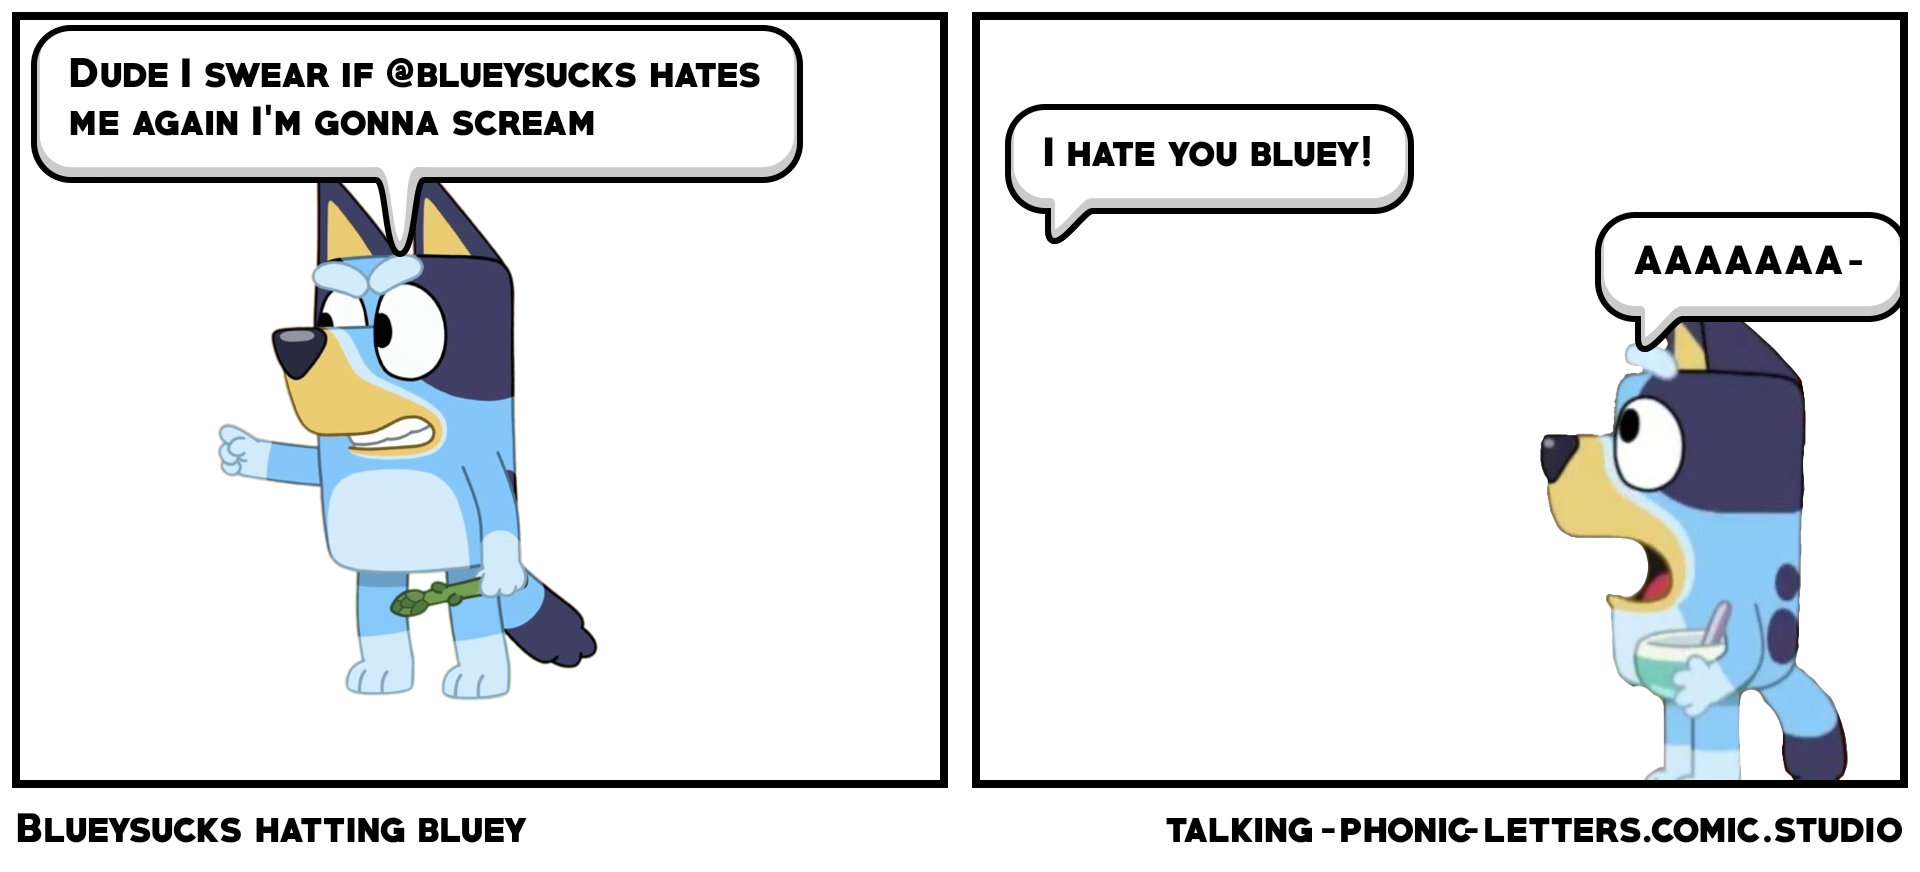 Blueysucks hatting bluey